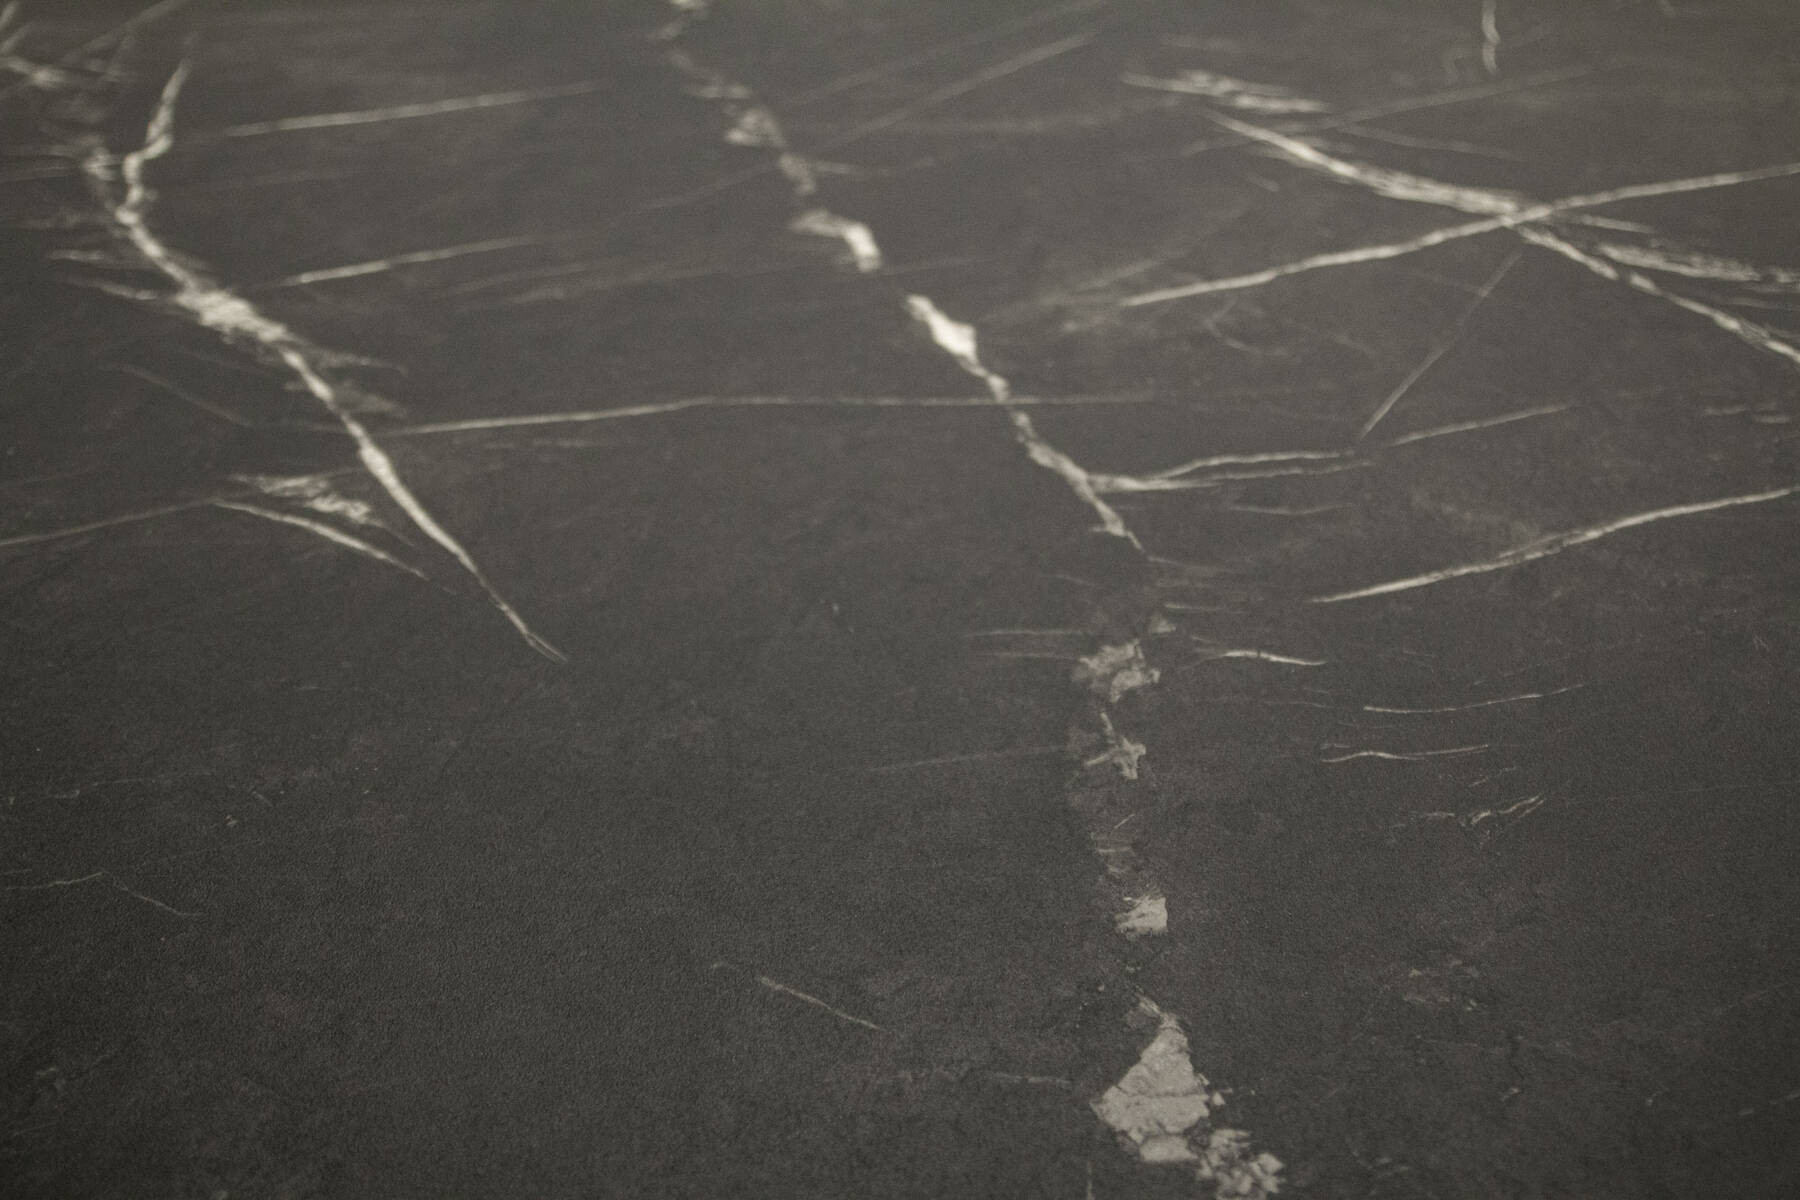 PVC podlaha Stellar Celeste 598 mramor, grafitová / šedá